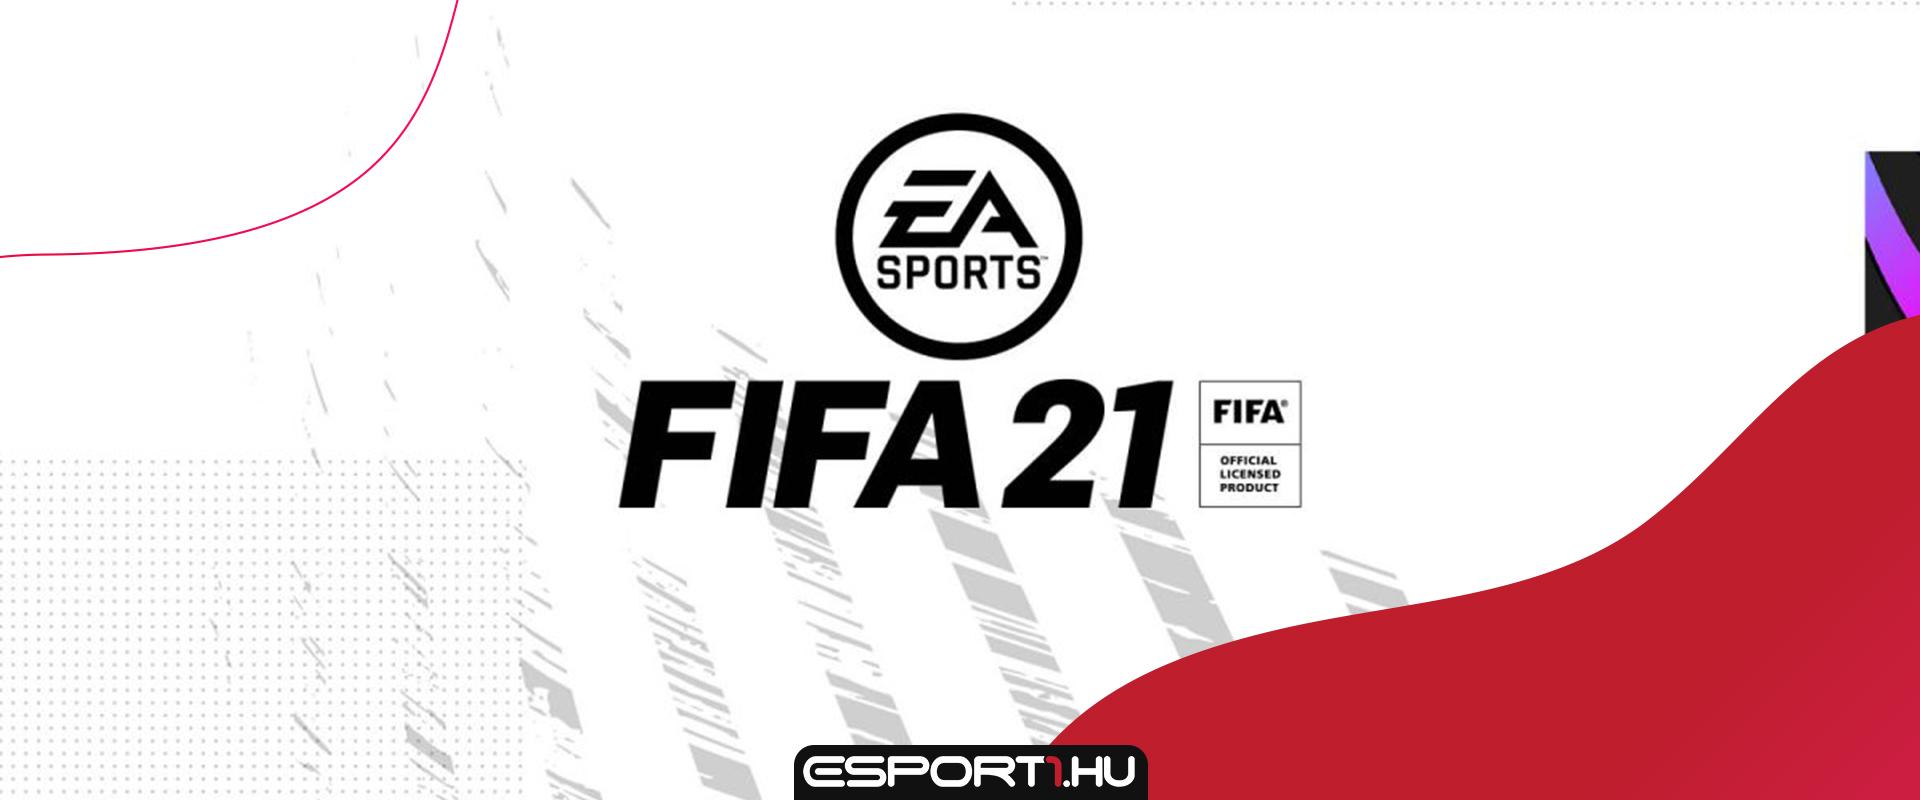 PS szimbólumokkal ellátott exkluzív mez szerezhető be az egyik új FIFA 21 SBC-vel